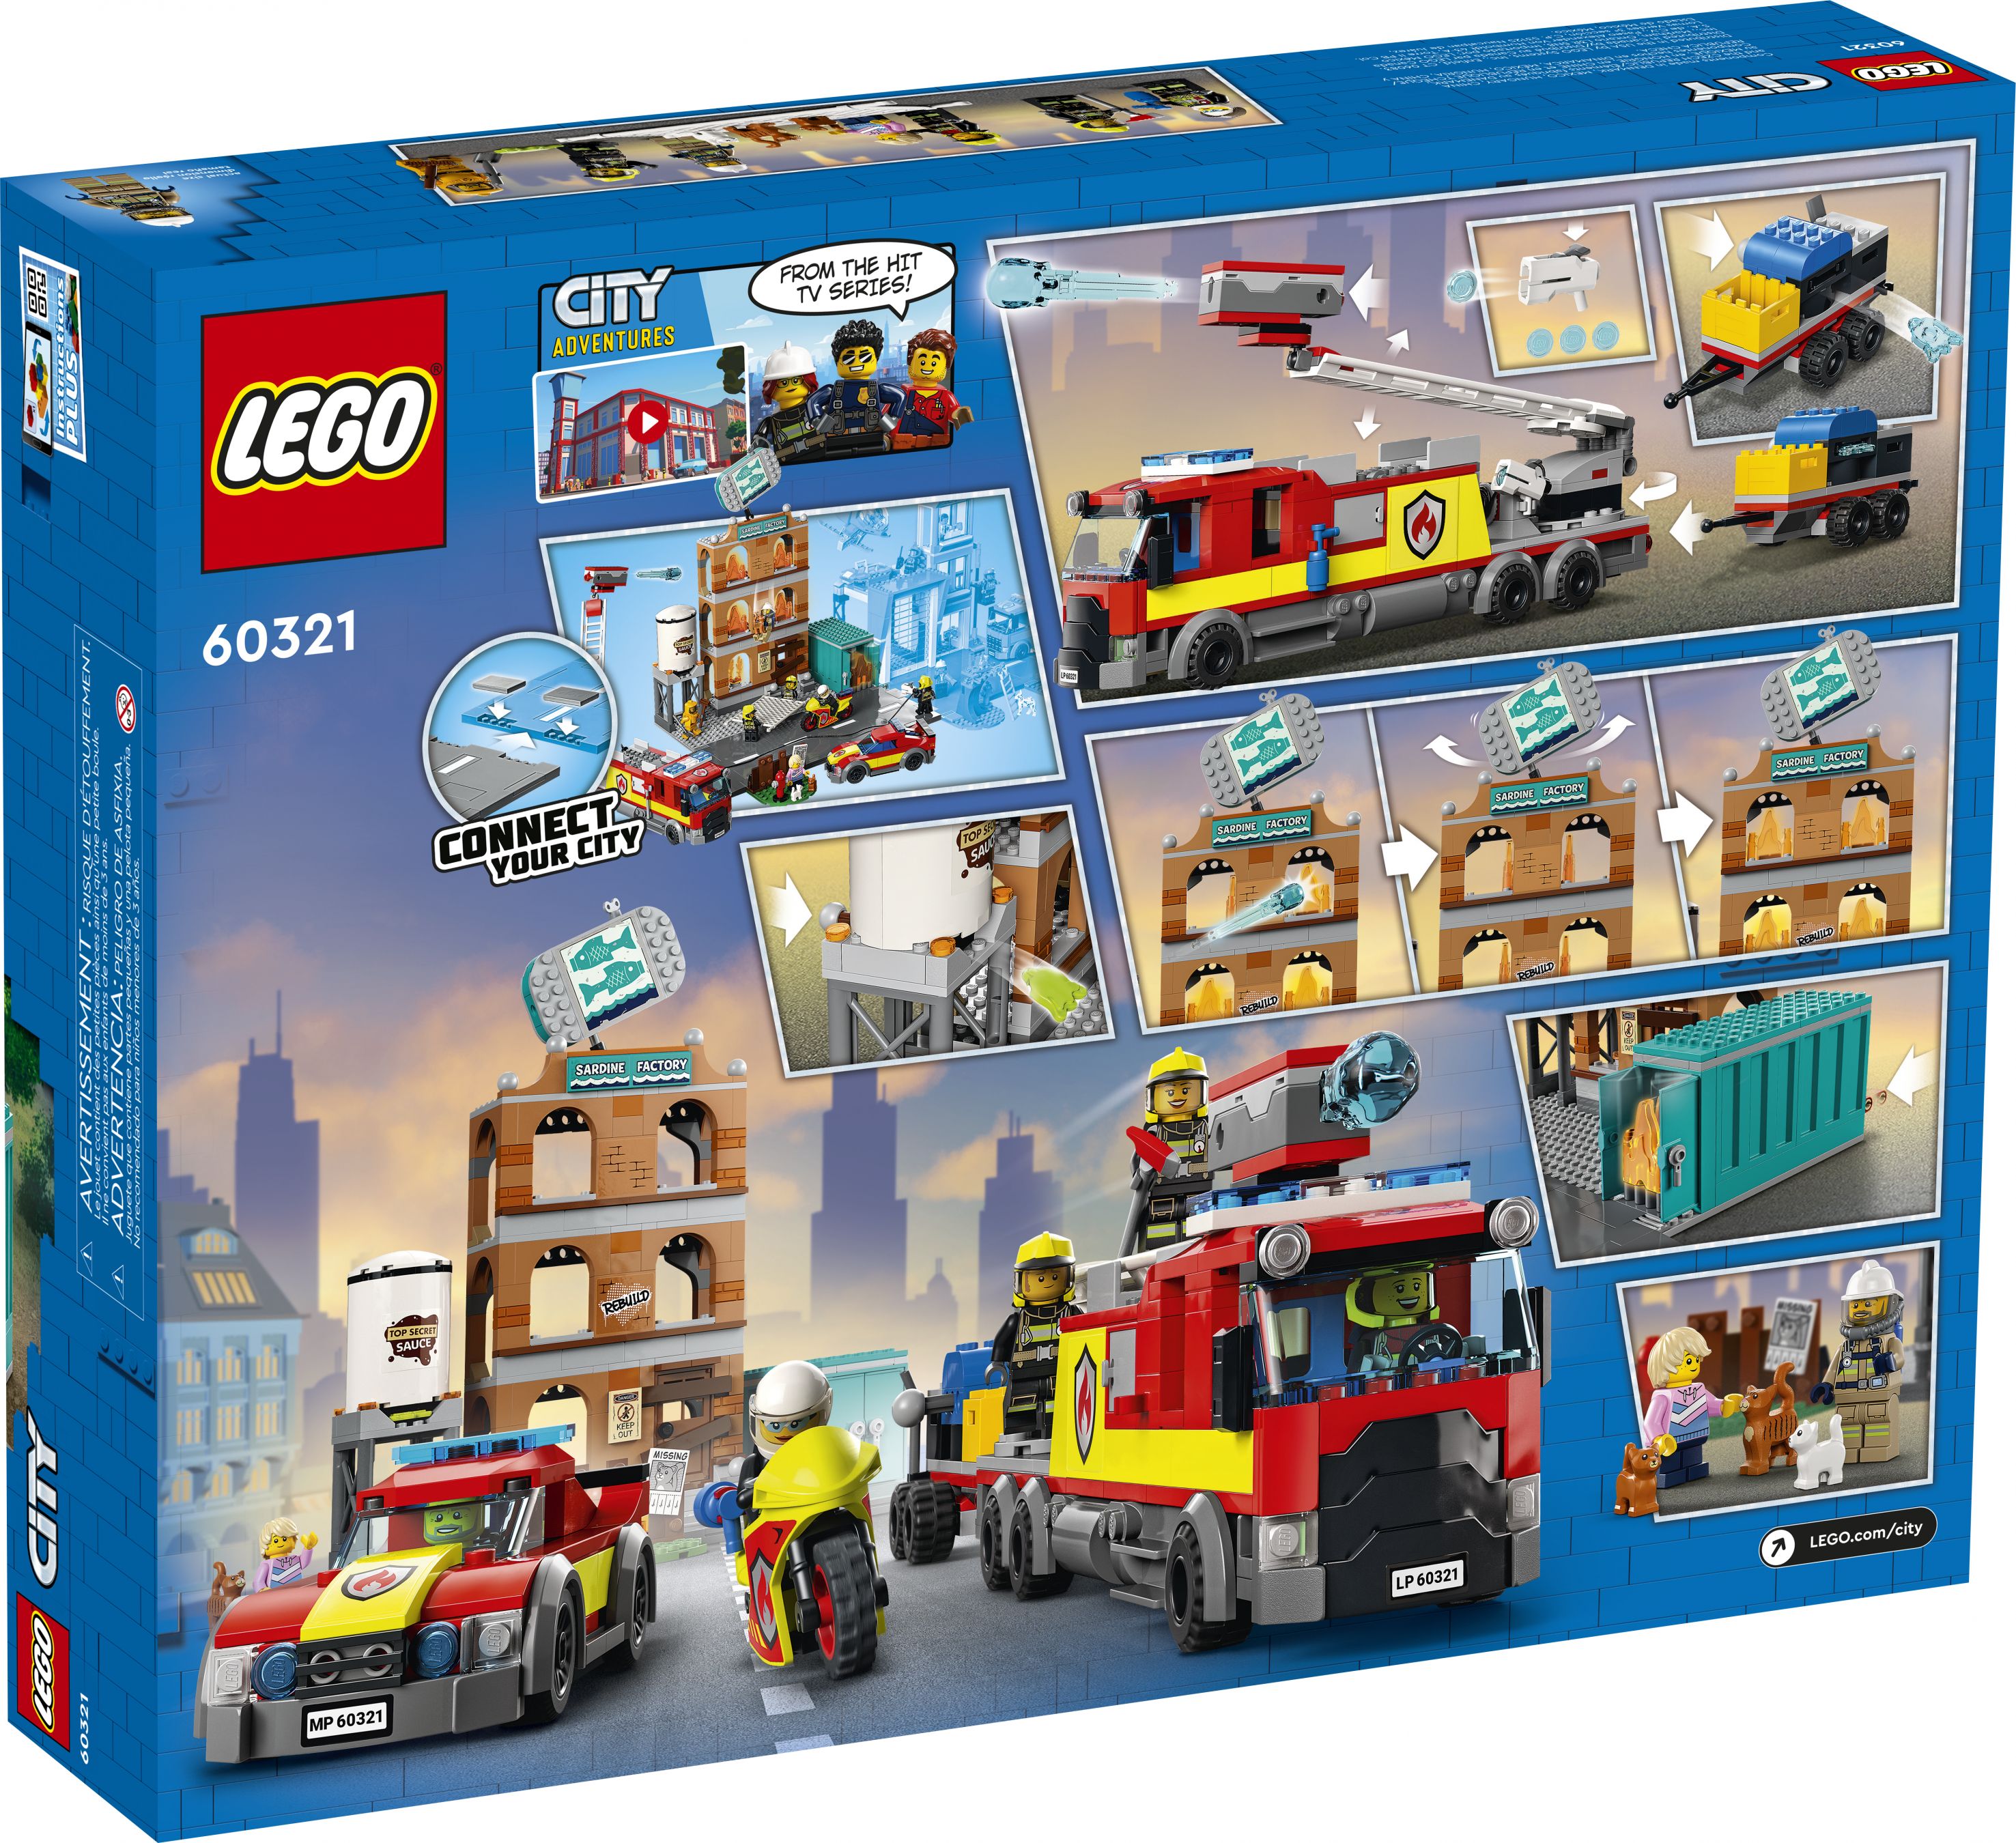 LEGO City 60321 Feuerwehreinsatz mit Löschtruppe LEGO_60321_Box5_V39.jpg